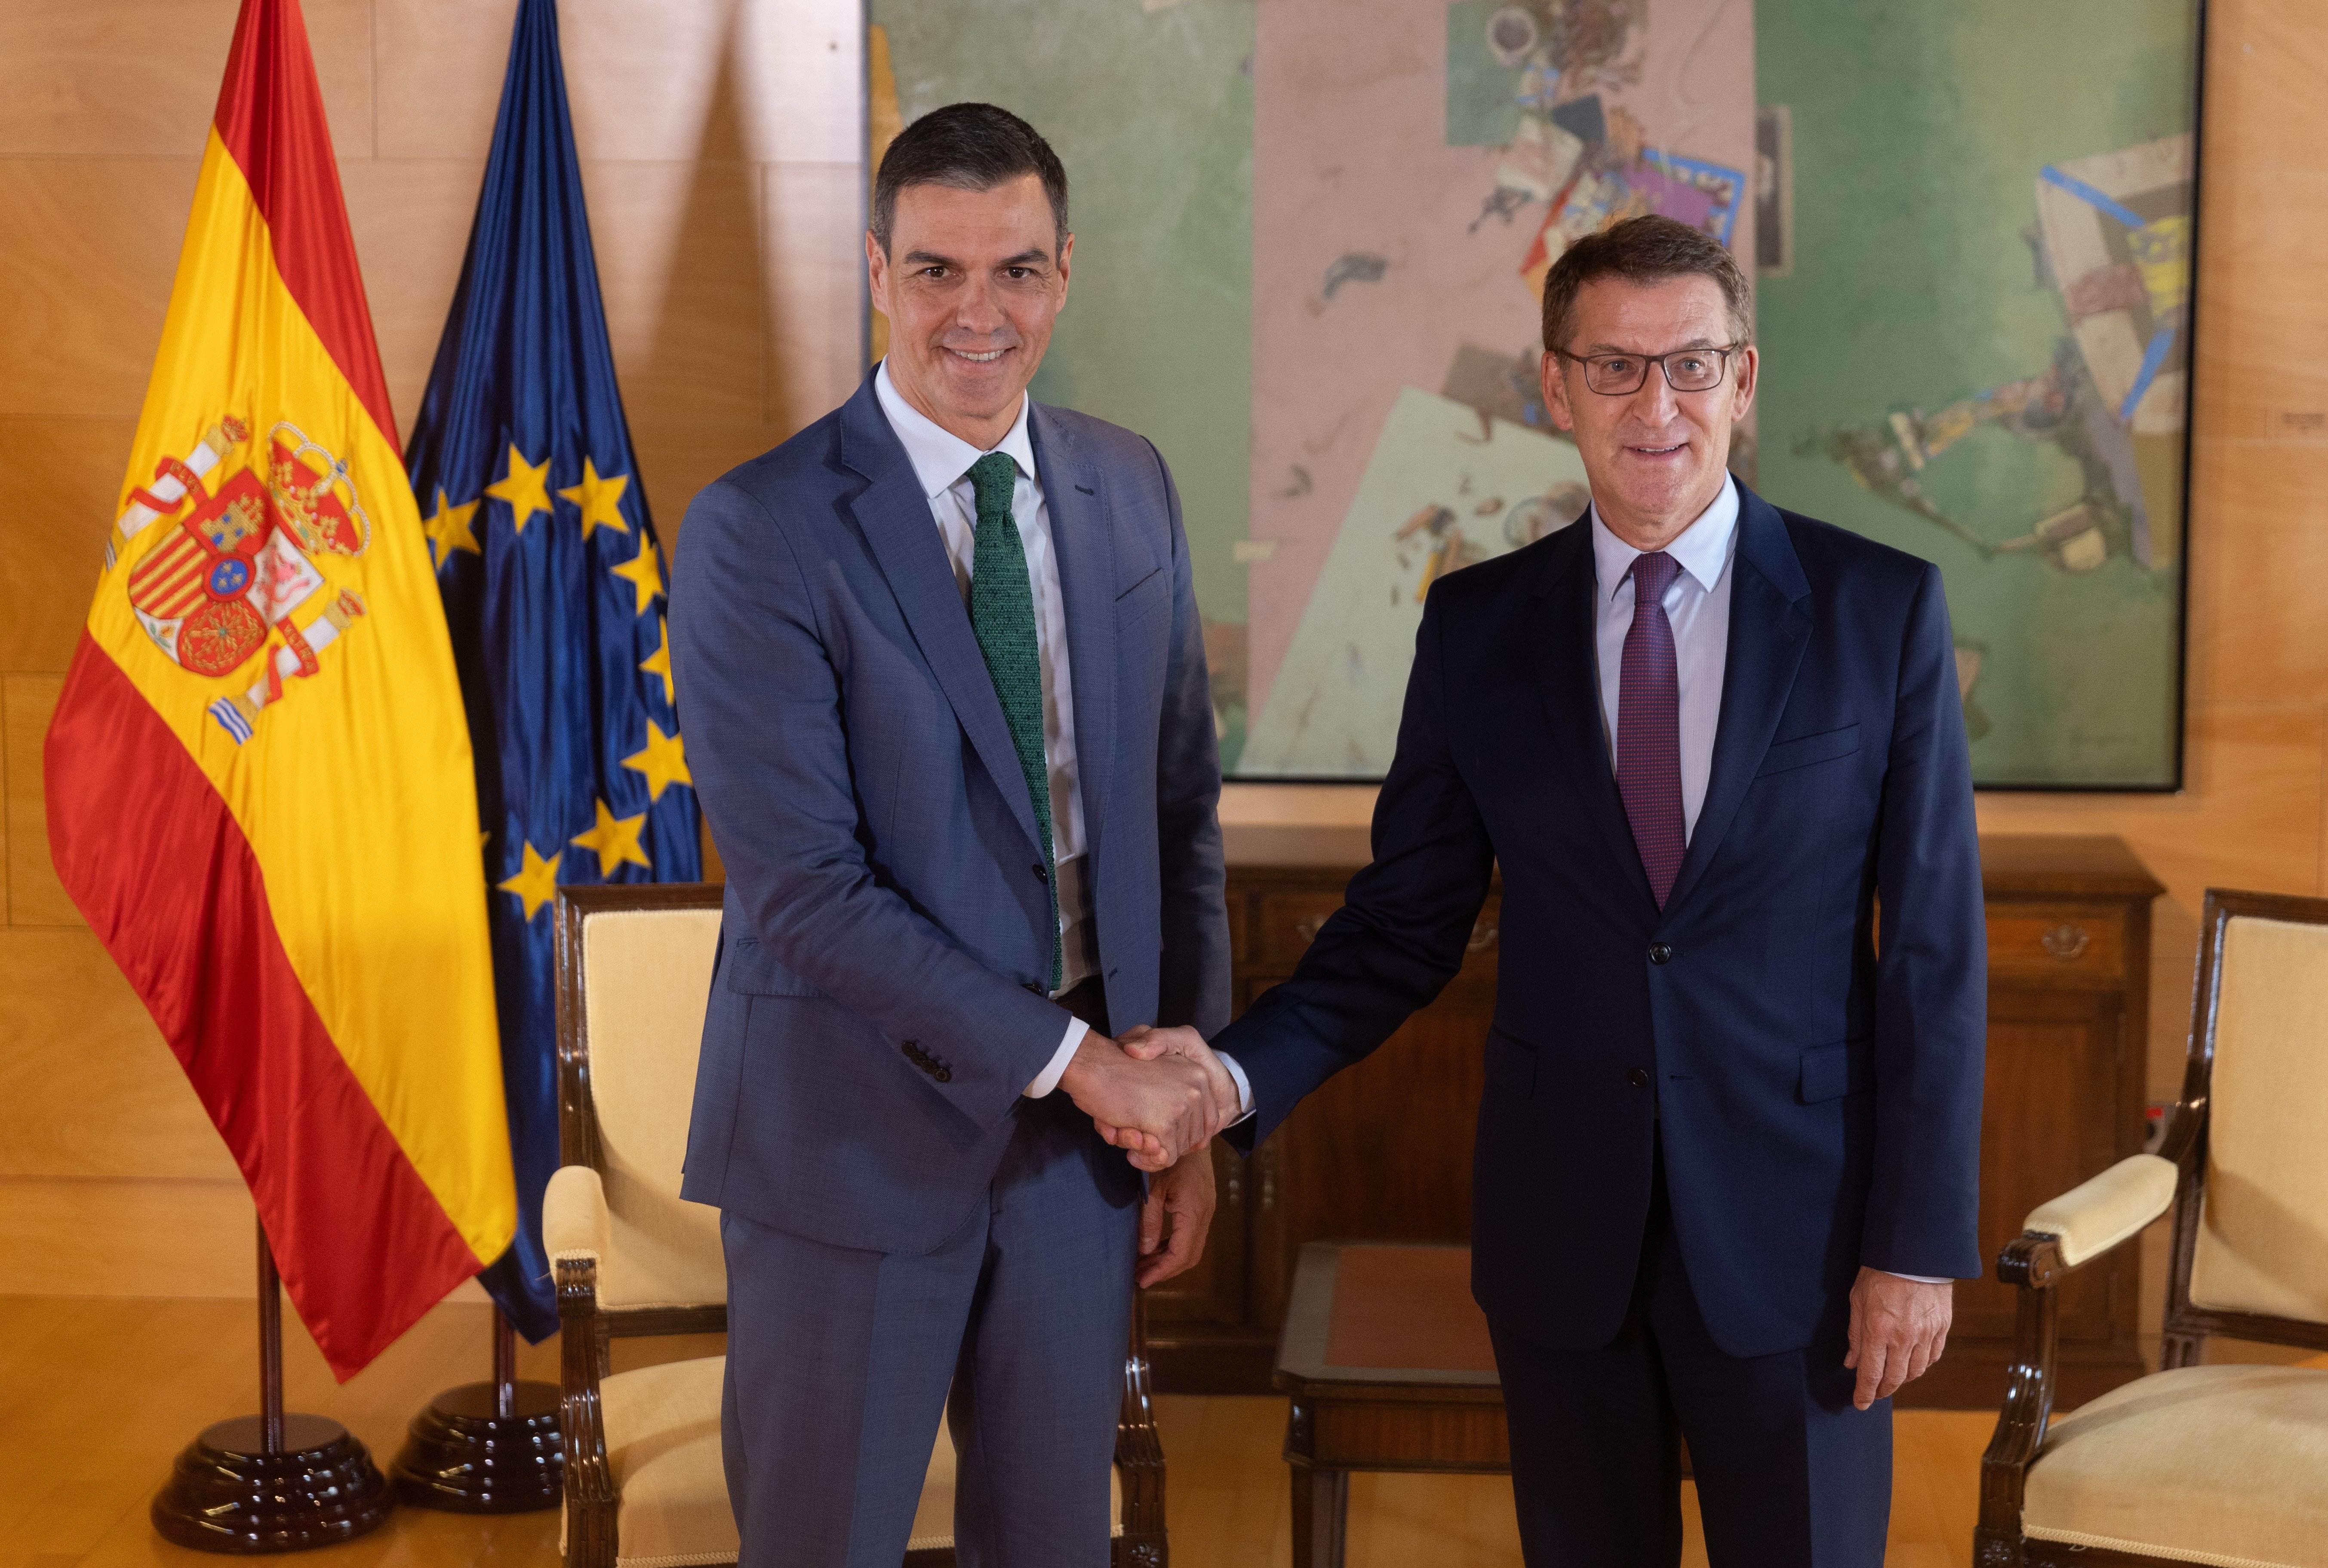 Feijóo reclama a Sánchez que “consulti als espanyols” la conveniència d’una amnistia